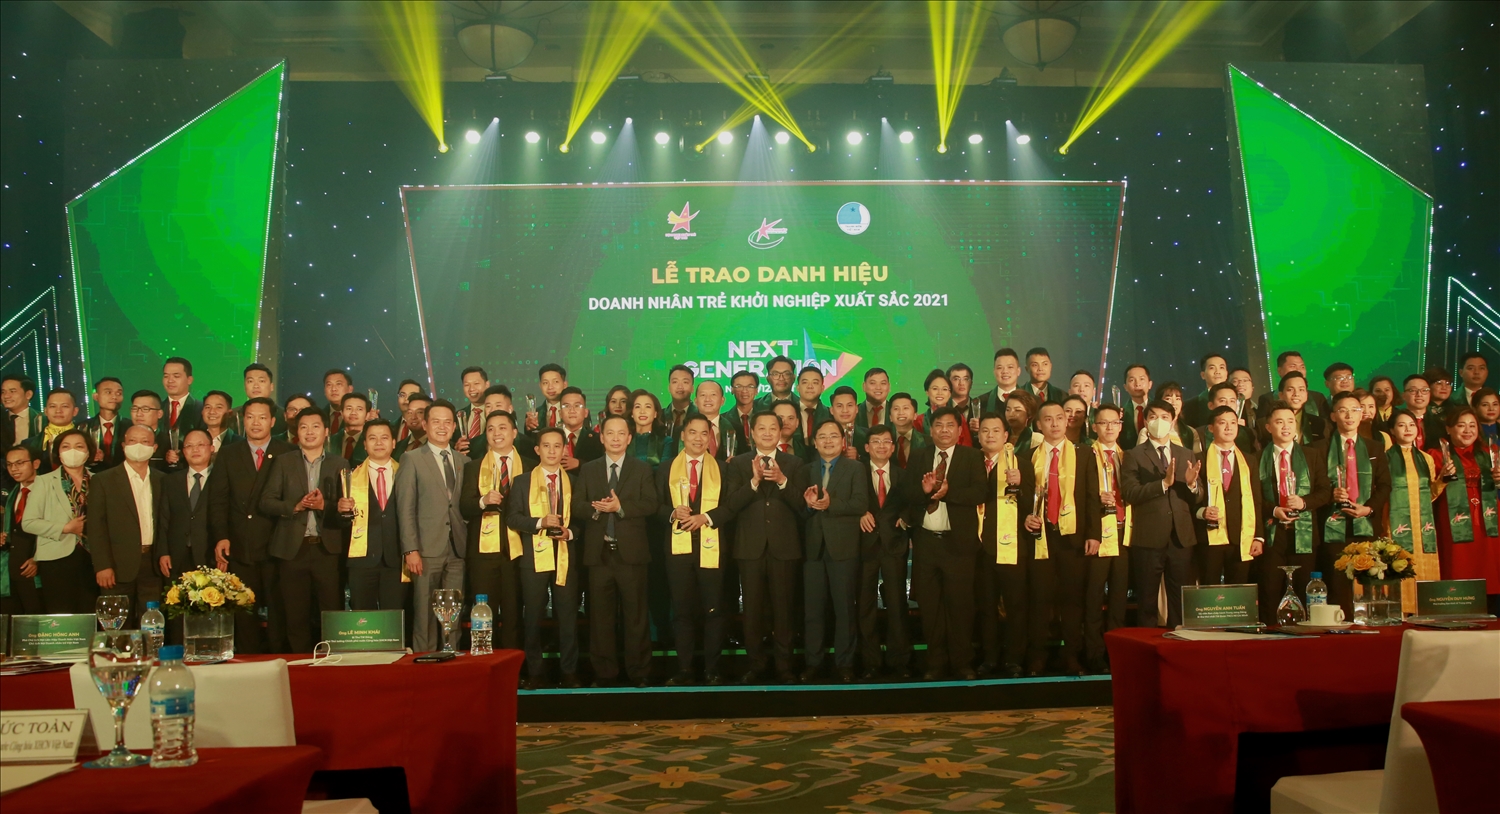 Doanh nhân trẻ khởi nghiệp xuất sắc 2021: Khơi dậy khát vọng cống hiến vì một Việt Nam hùng cường